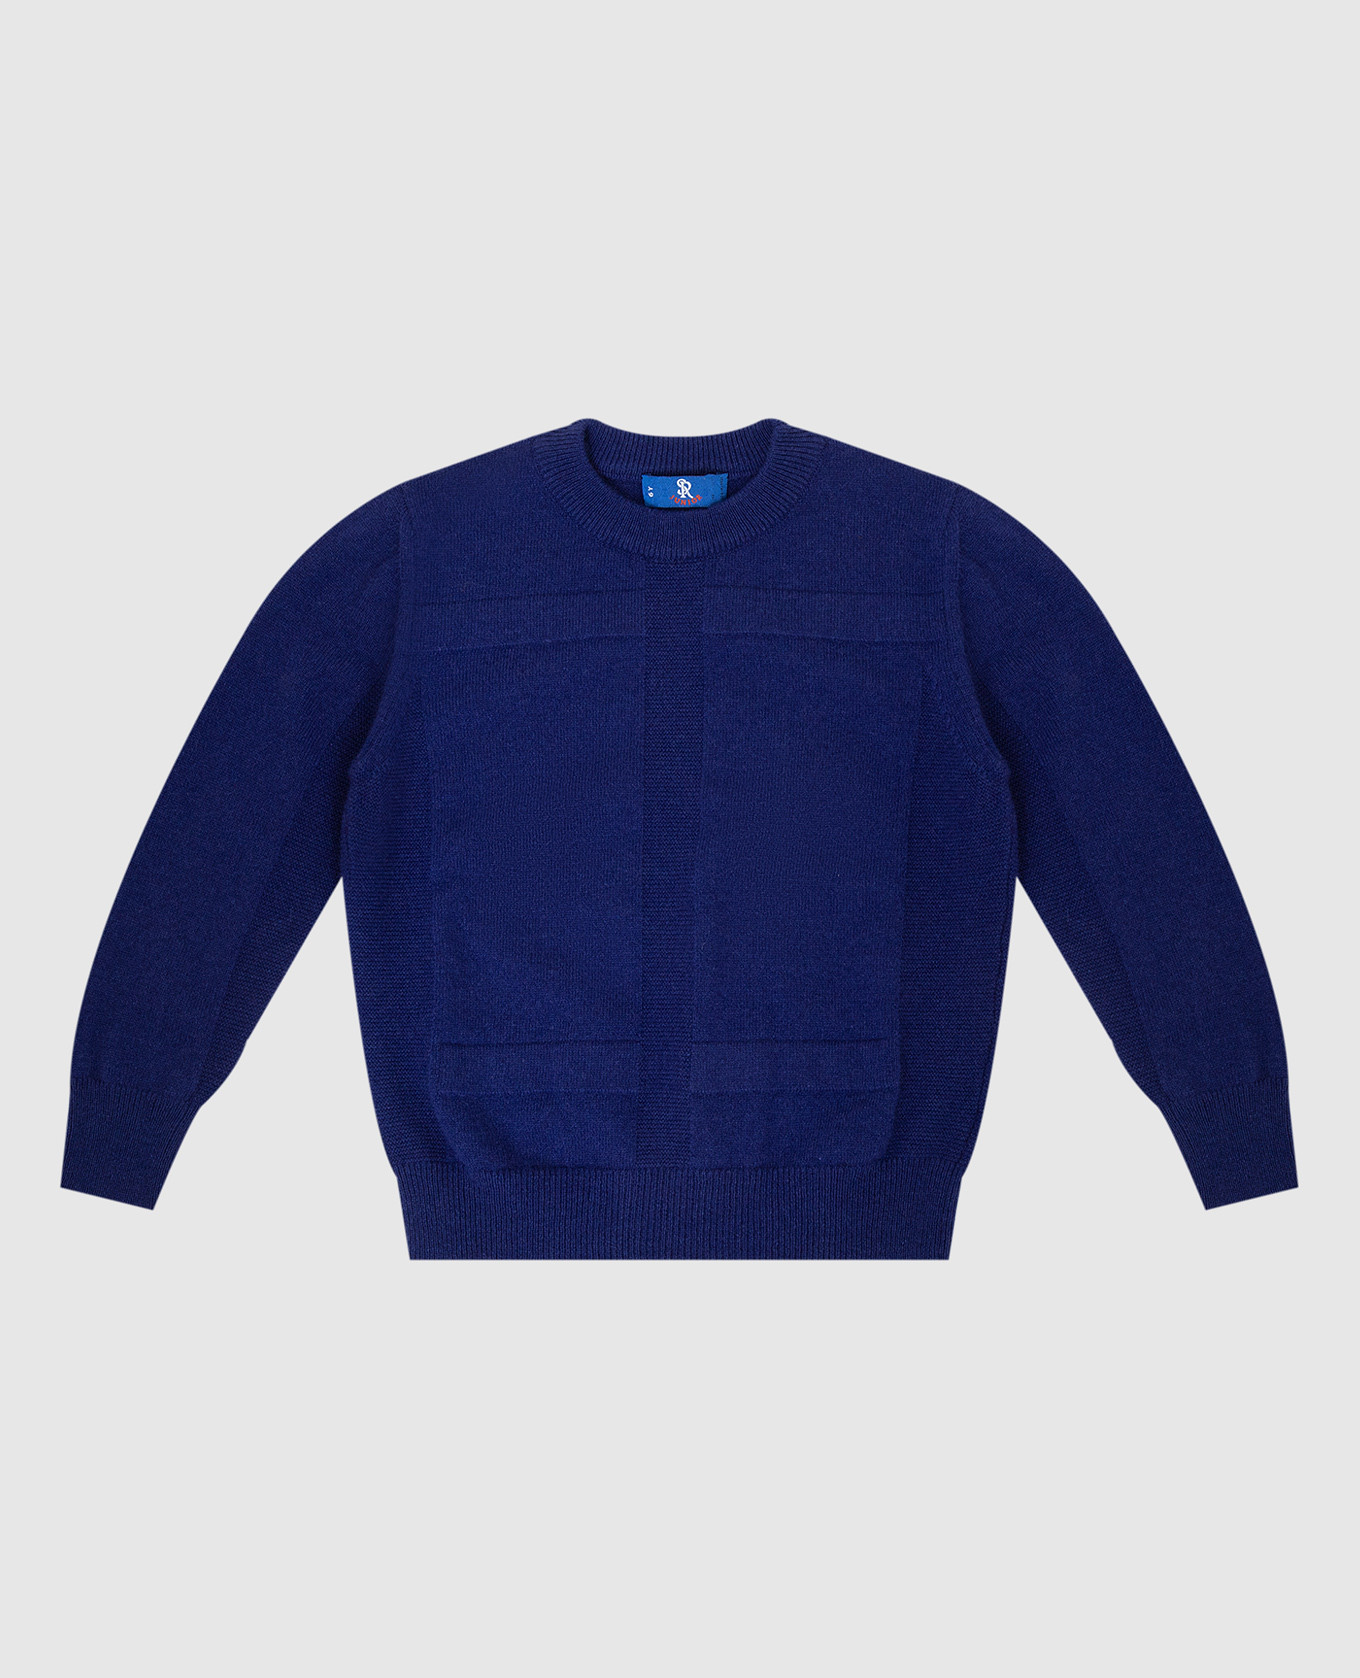 Children's blue cashmere sweater